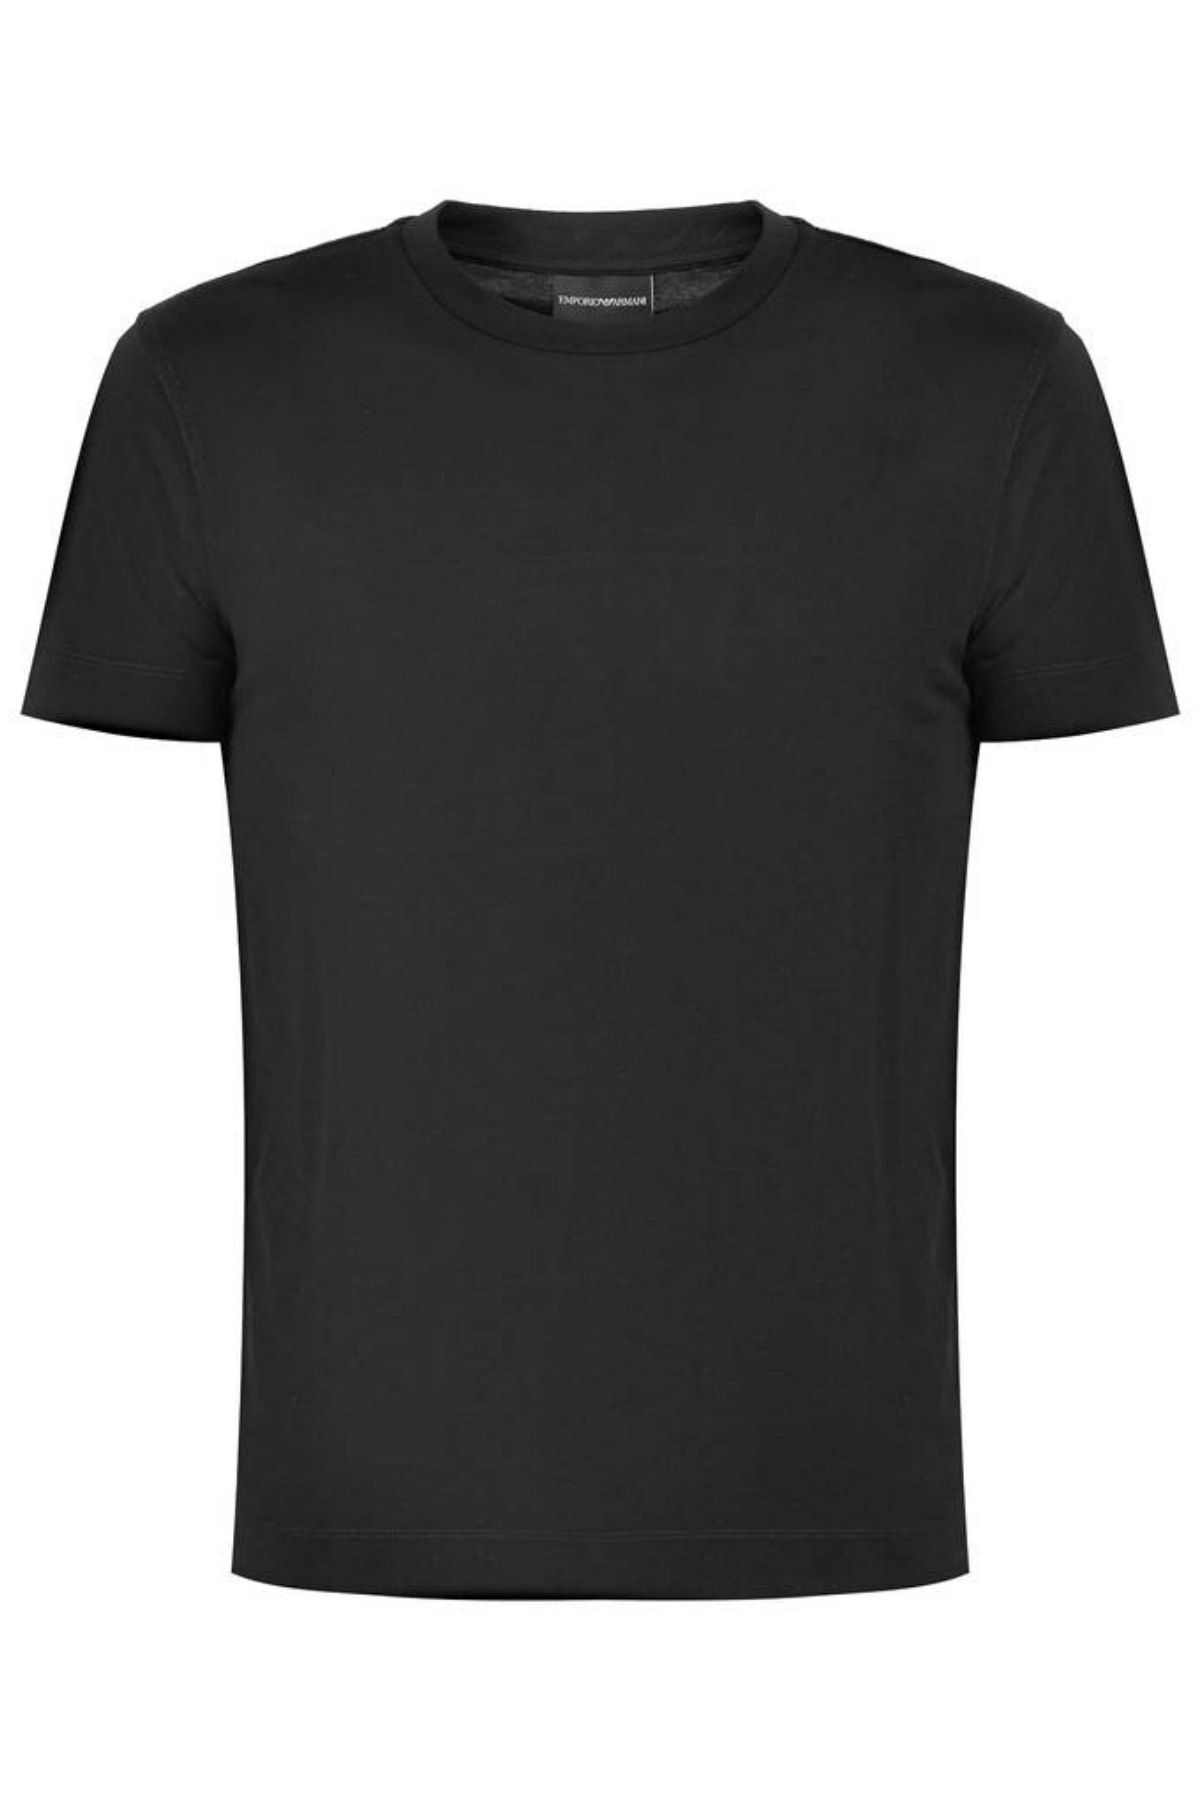 Emporio Armani Erkek Marka Logolu Rahat Siyah T-Shirt 8N1T83 1J2VZ-0999